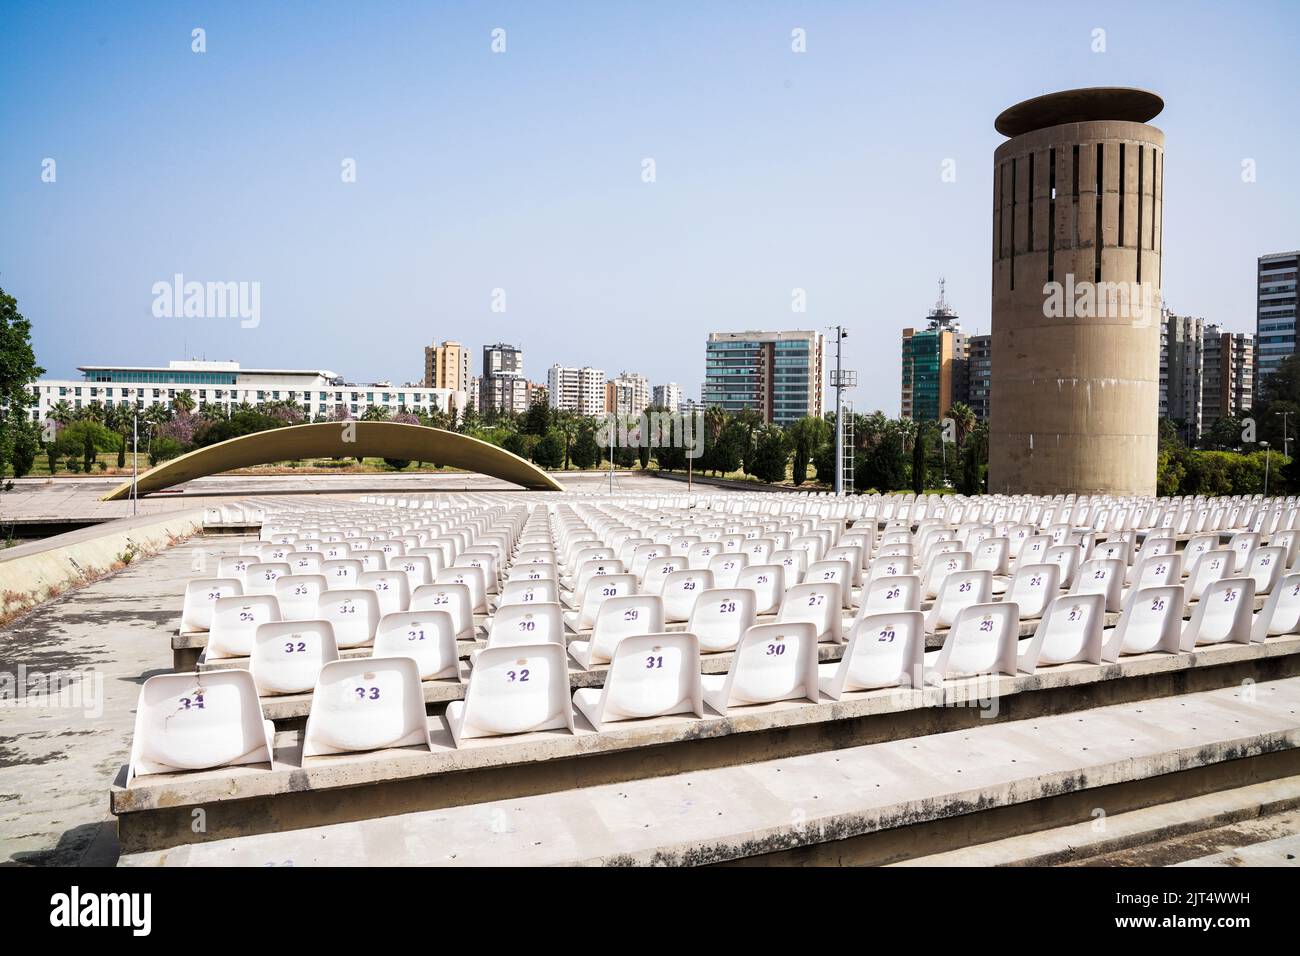 El arquitecto Oscar Niemeyer diseñó los edificios del centro de exposiciones Rashid Karami en Trípoli, pero los trabajos de construcción nunca se terminaron debido al estallido de la guerra civil. Trípoli, Líbano Foto de stock